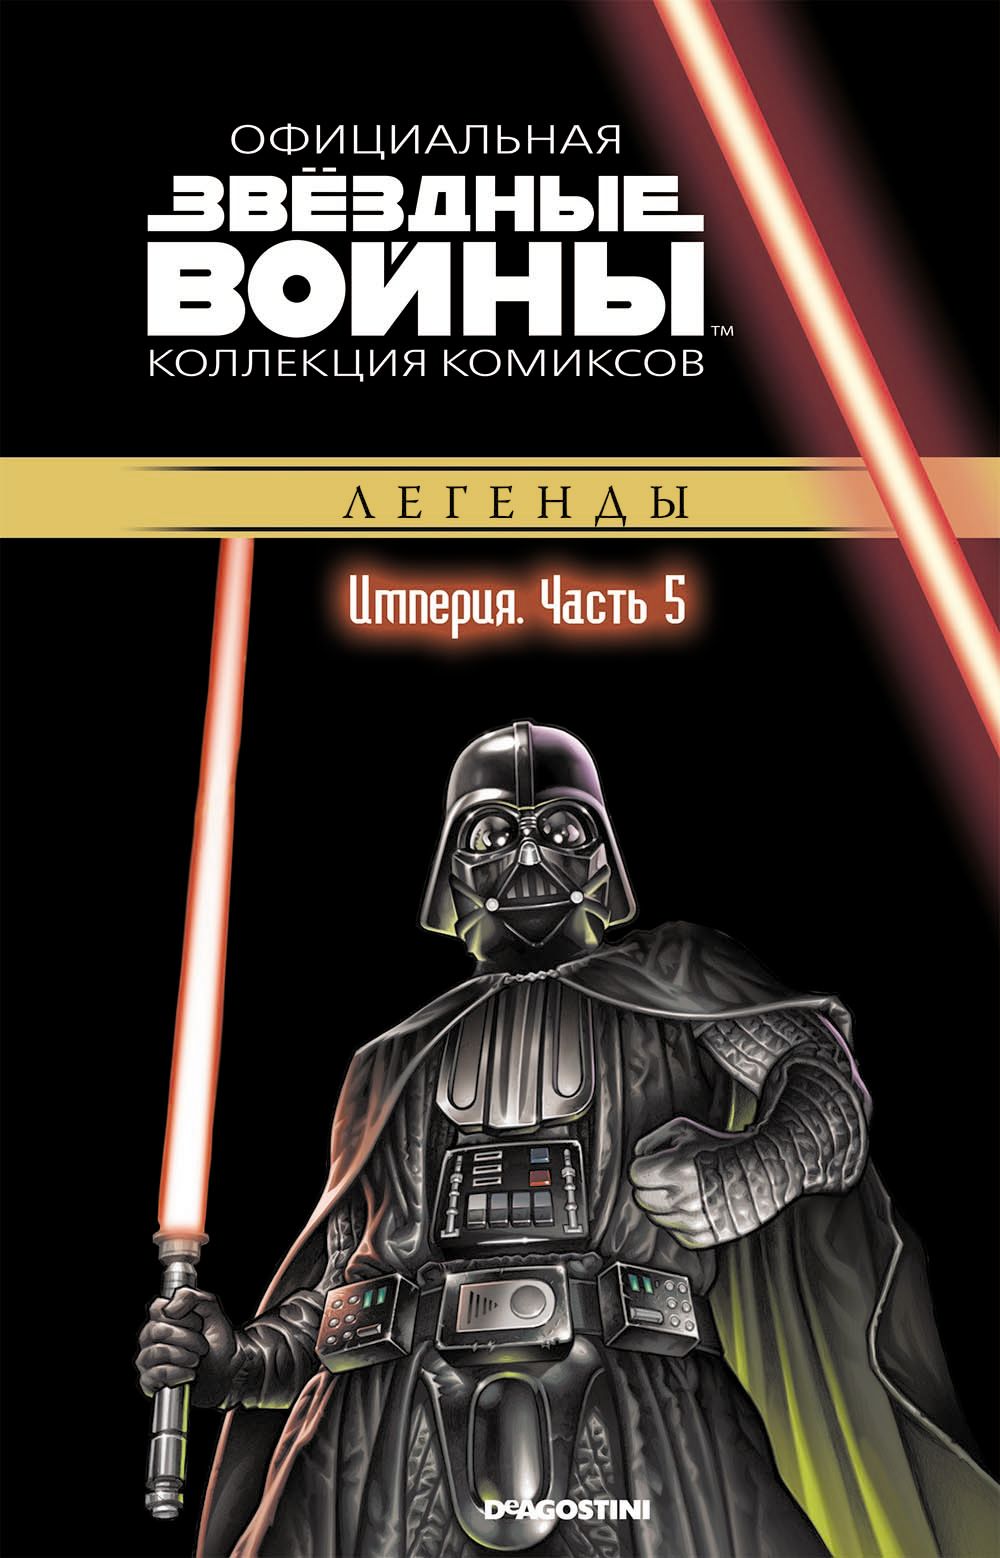 Комикс на русском языке «Звёздные войны. Официальная коллекция комиксов. Том 25. Империя. Часть 5»